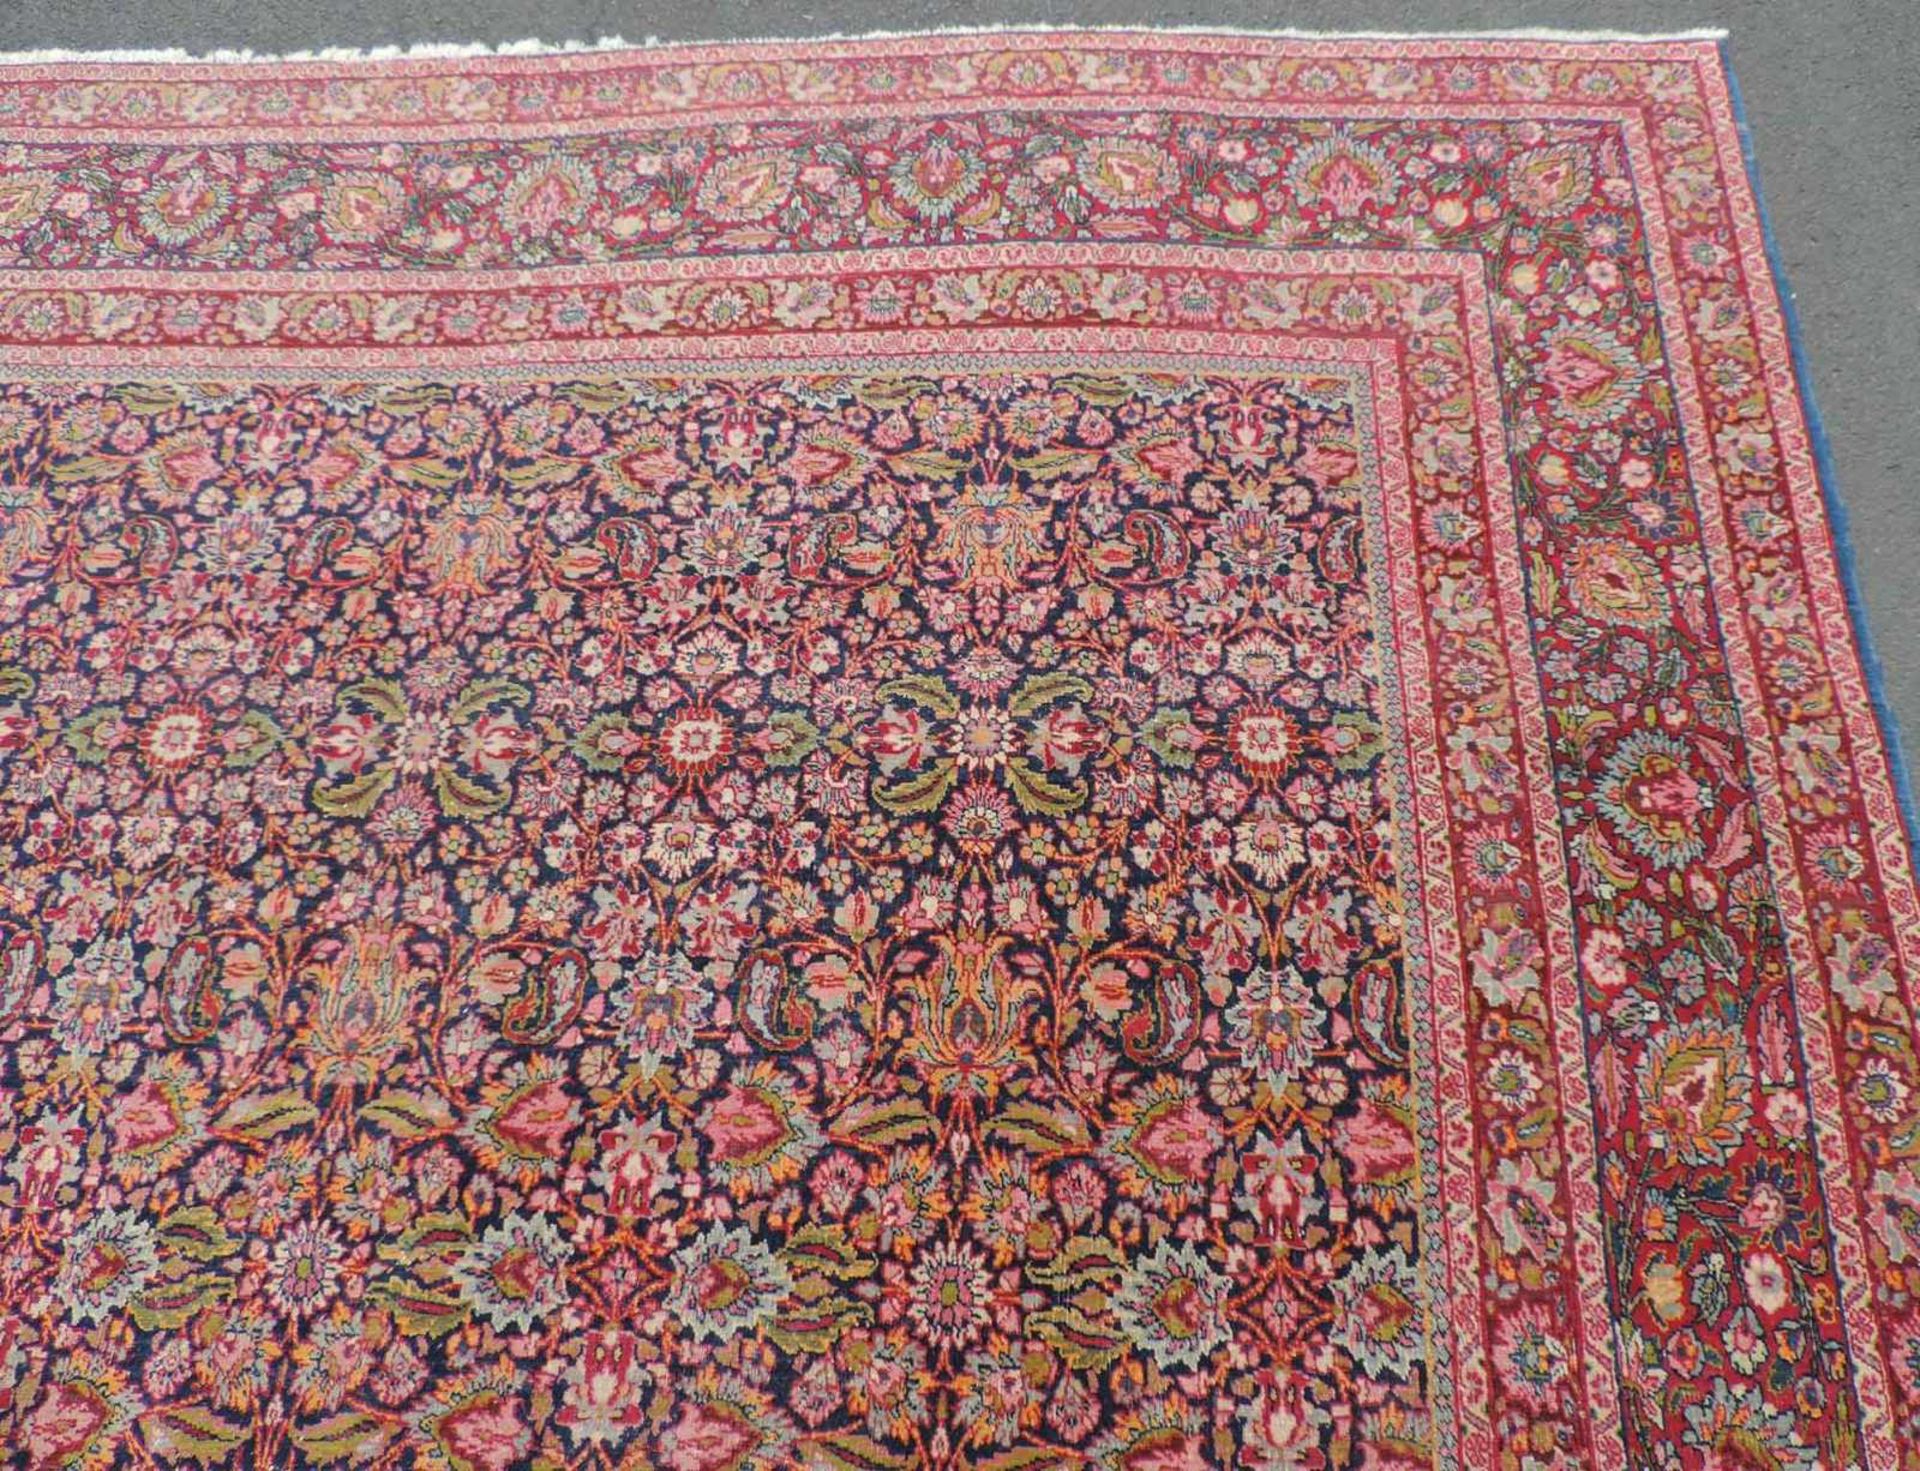 Kirman Laver Meisterteppich. Sehr feine Knüpfung. Iran. Antik, um 1900. 345 cm x 255 cm. - Bild 5 aus 9